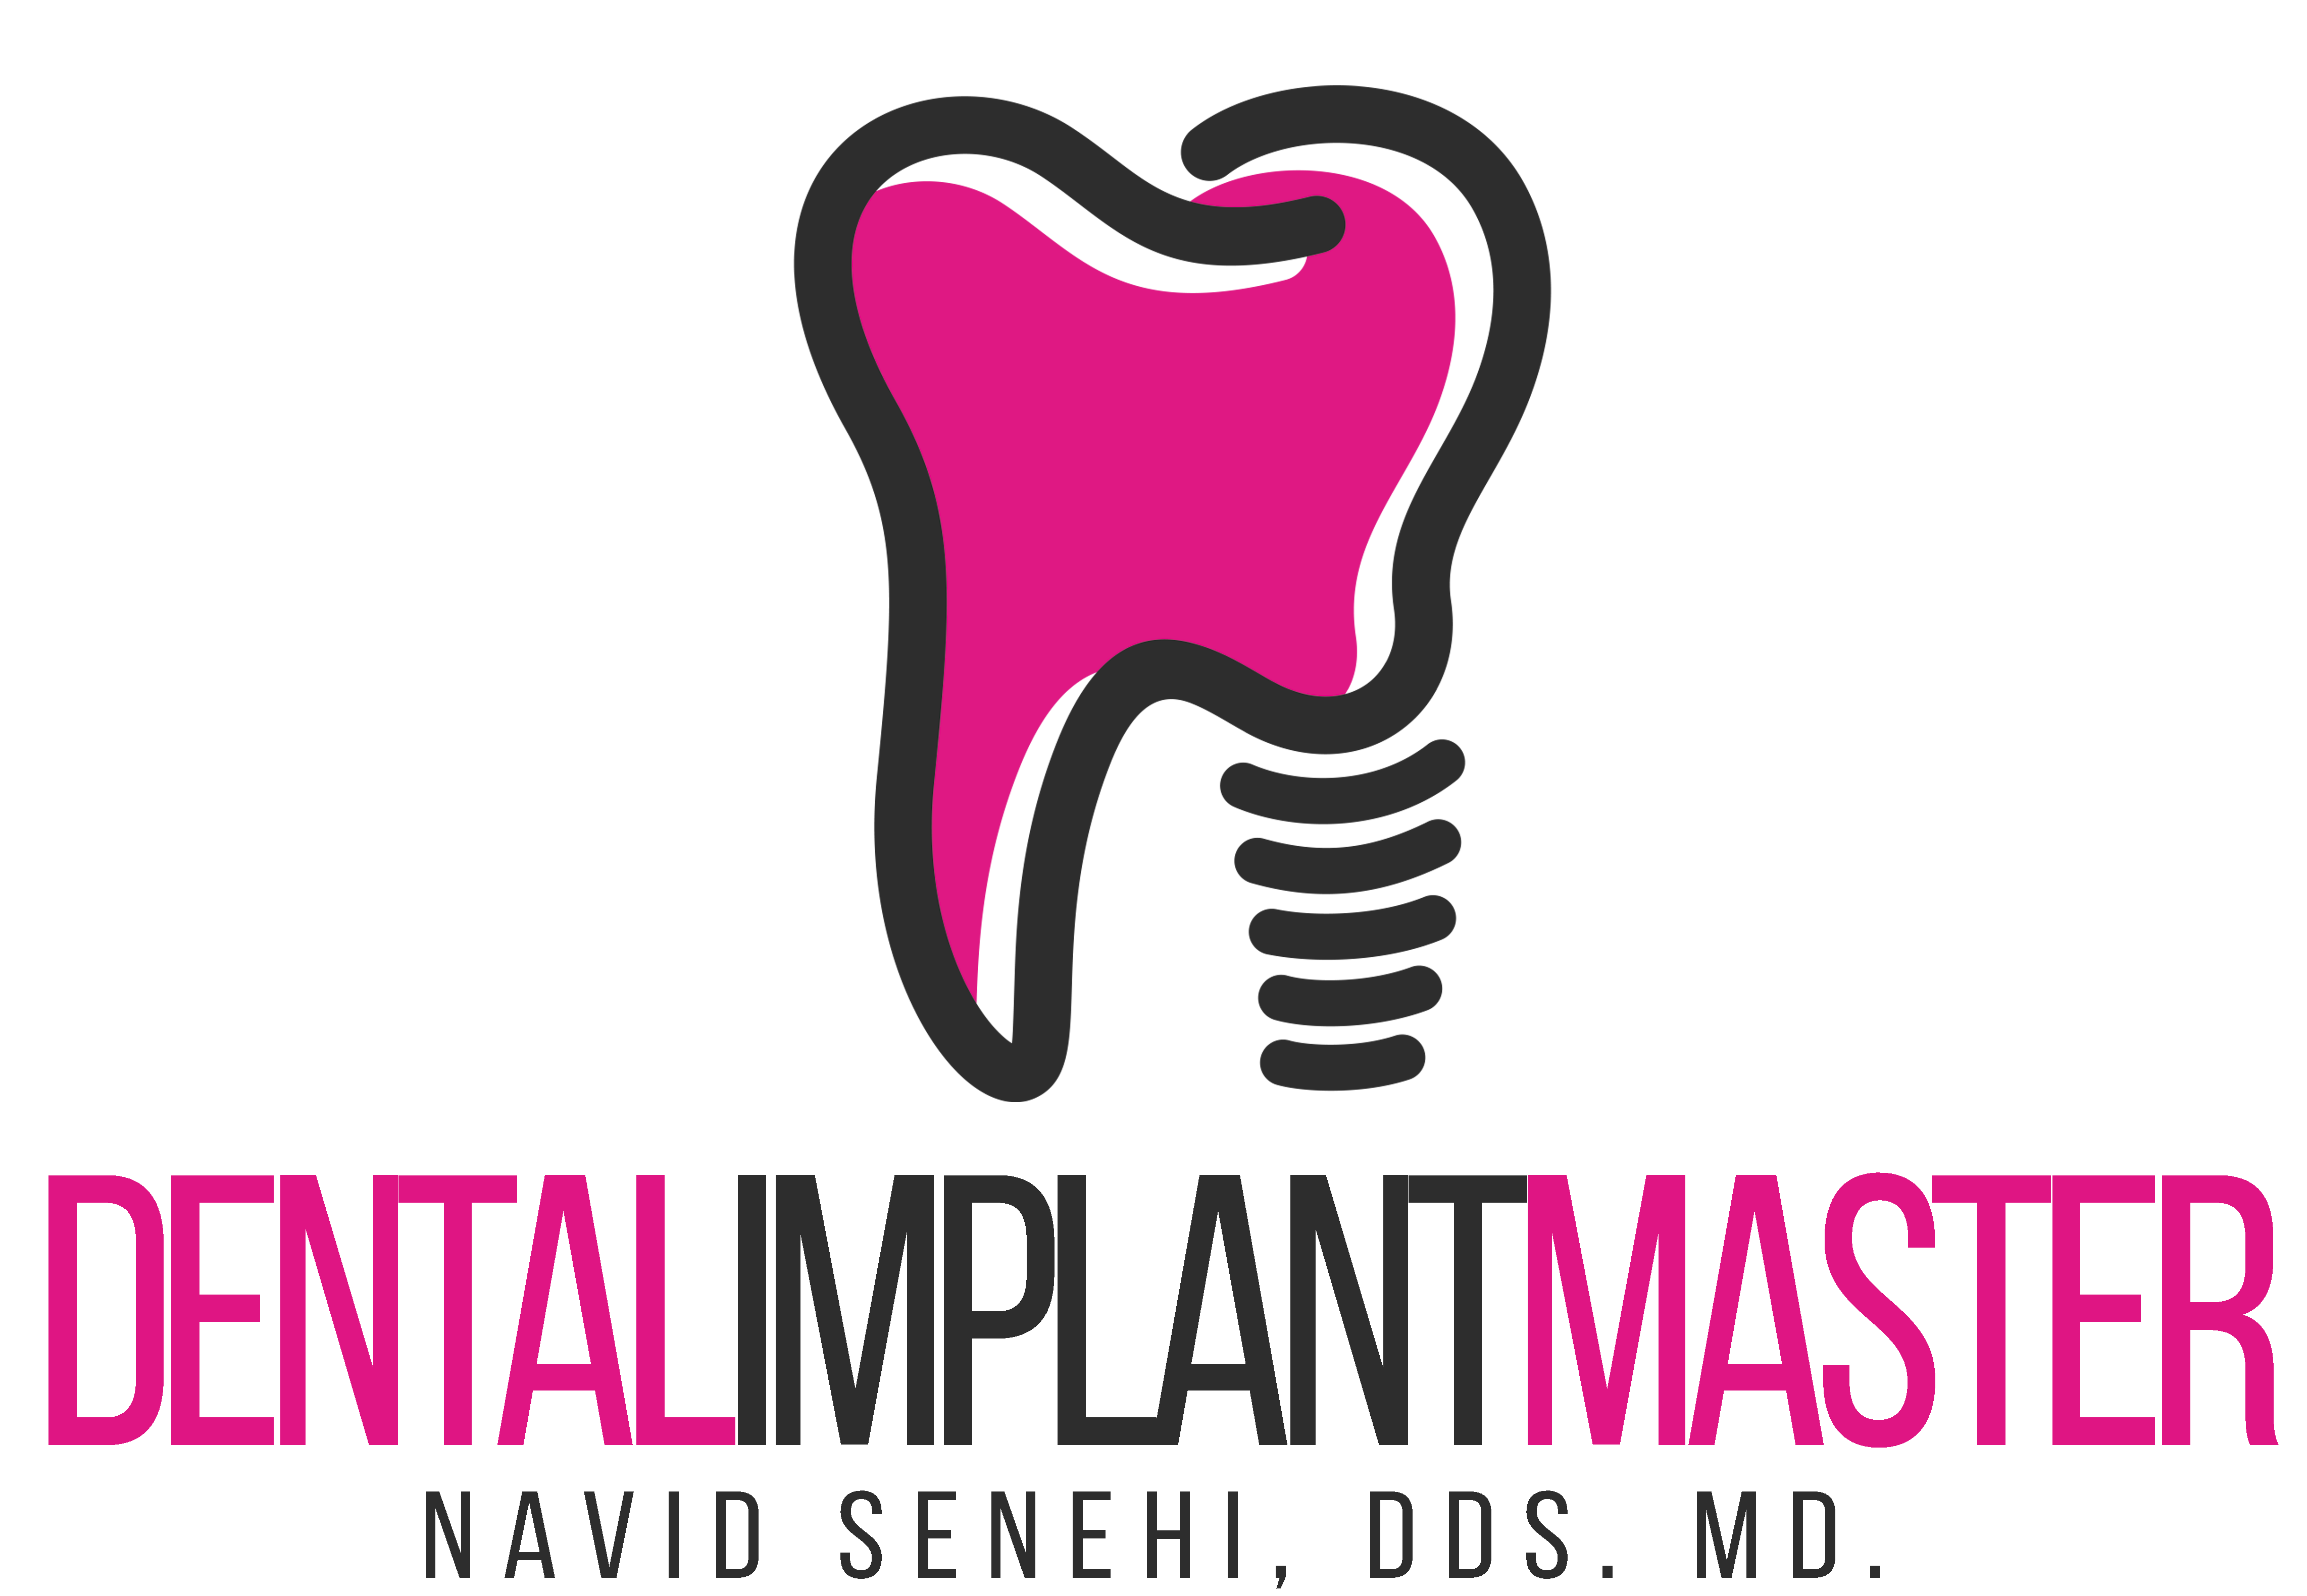 Dr. Navid Senehi, DDS. MD. Dental Implant Master